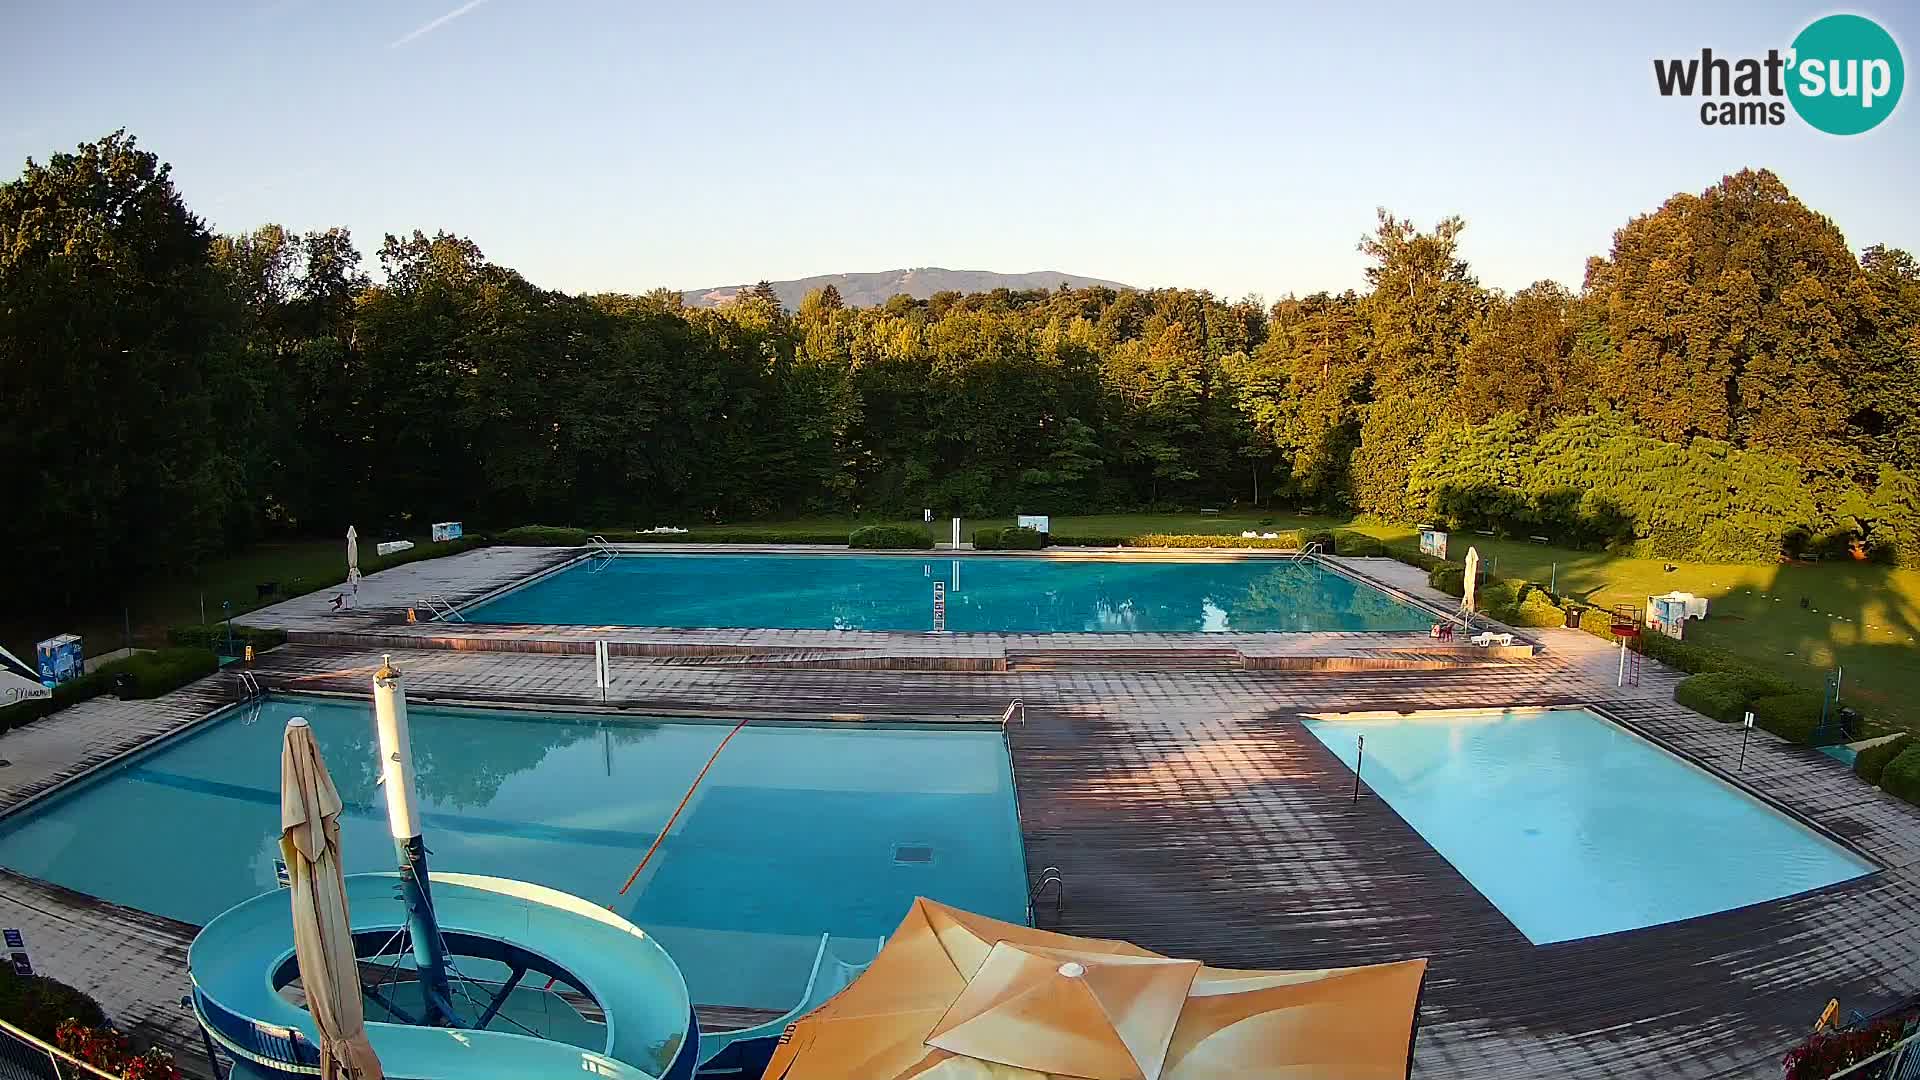 Cámara web en la piscina de la isla de Maribor